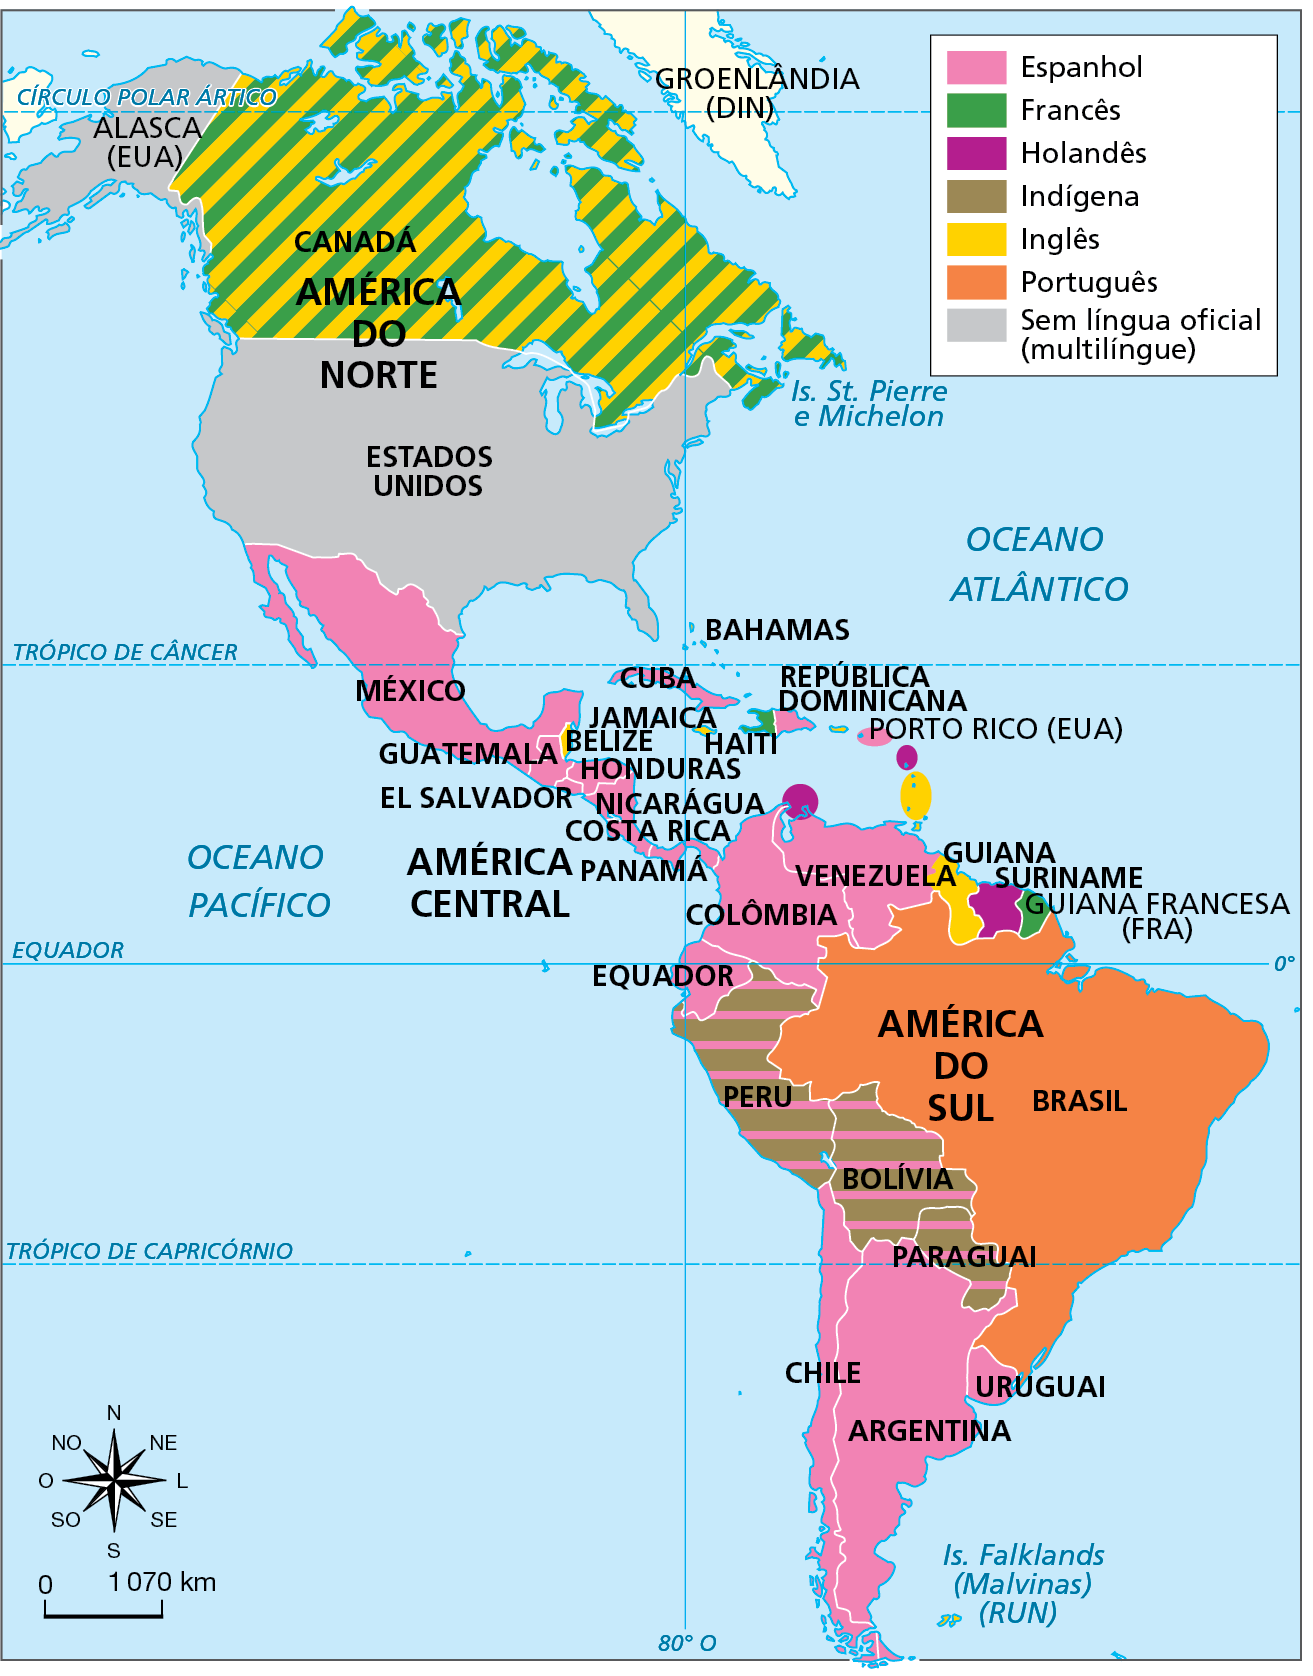 Mapa. América: línguas oficiais. Mapa da América diferenciado por cores, que representam as línguas oficiais faladas nos países no continente. A correspondência entre línguas, cores e países é: Espanhol (rosa): MÉXICO, GUATEMALA, CUBA, EL SALVADOR, HONDURAS, REPÚBLICA DOMINICANA, NICARAGUÁ, COSTA RICA, PANAMÁ, VENEZUELA, PERU, BOLÍVIA, PARAGUAI, COLÔMBIA, CHILE, URUGUAI, ARGENTINA. Francês (verde): CANADÁ, HAITI. Holandês (roxo): SURINAME. Indígena (marrom): PERU, BOLÍVIA, PARAGUAI. Inglês (amarelo): CANADÁ. BELIZE, BAHAMAS, JAMAICA, TRINIDAD E TOBAGO, GUIANA. Português (laranja): BRASIL. Sem língua oficial (multilíngue): ESTADOS UNIDOS (INCLUSIVE ALASCA). A GUIANA FRANCESA, departamento ultramarino pertencente à França, está em roxo, indicando que a língua oficial é o francês. Na parte inferior, rosa dos ventos e escala de 0 a 1.070 quilômetros.